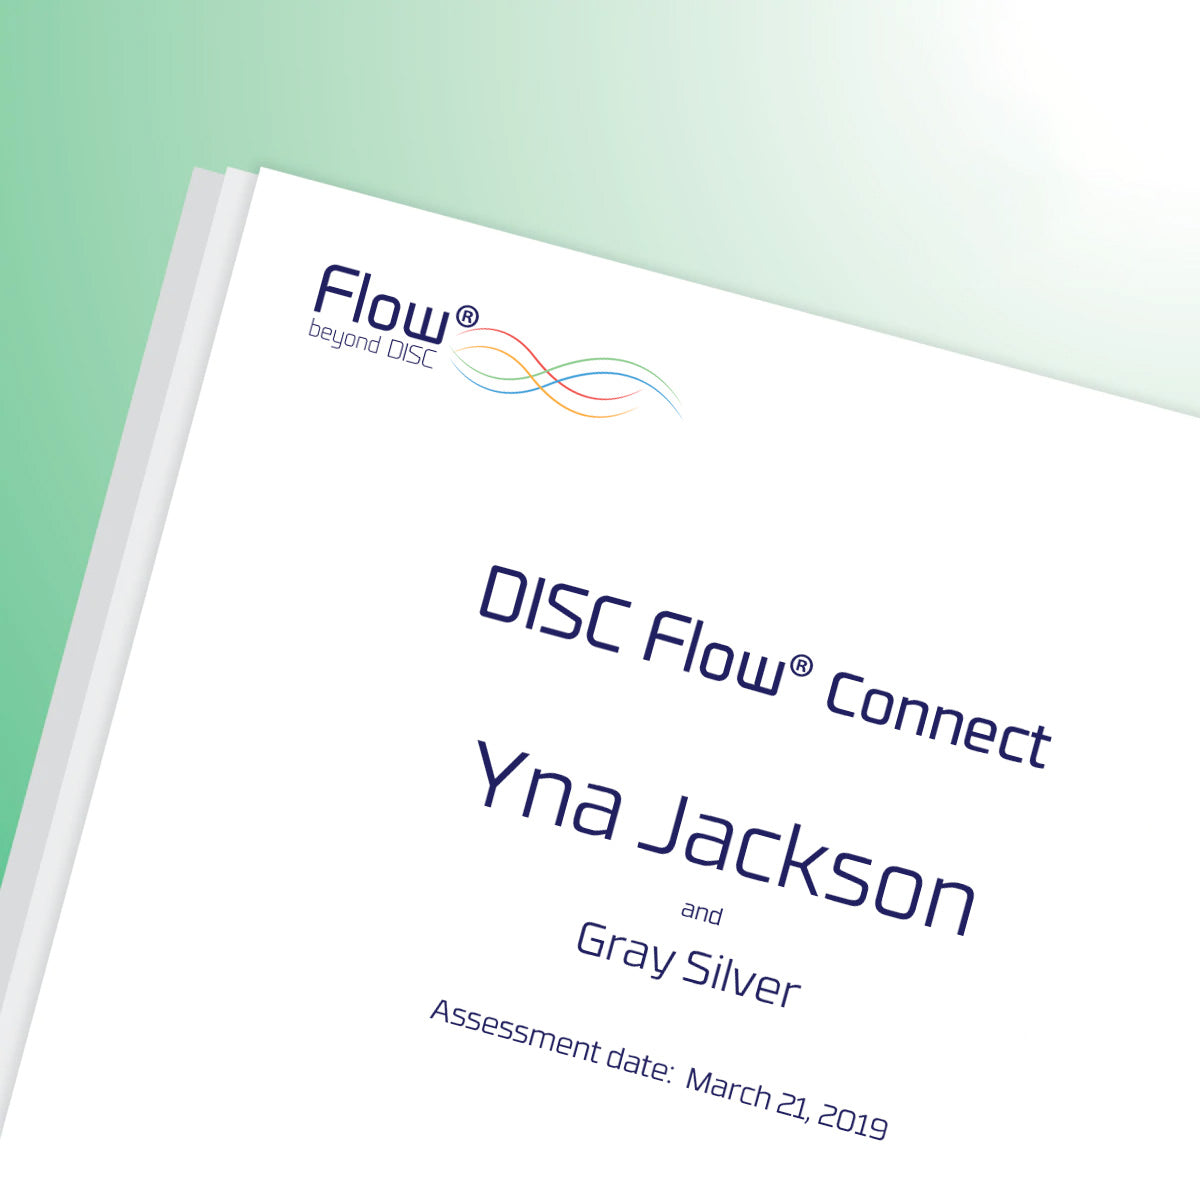 DISC Flow® CONNECT